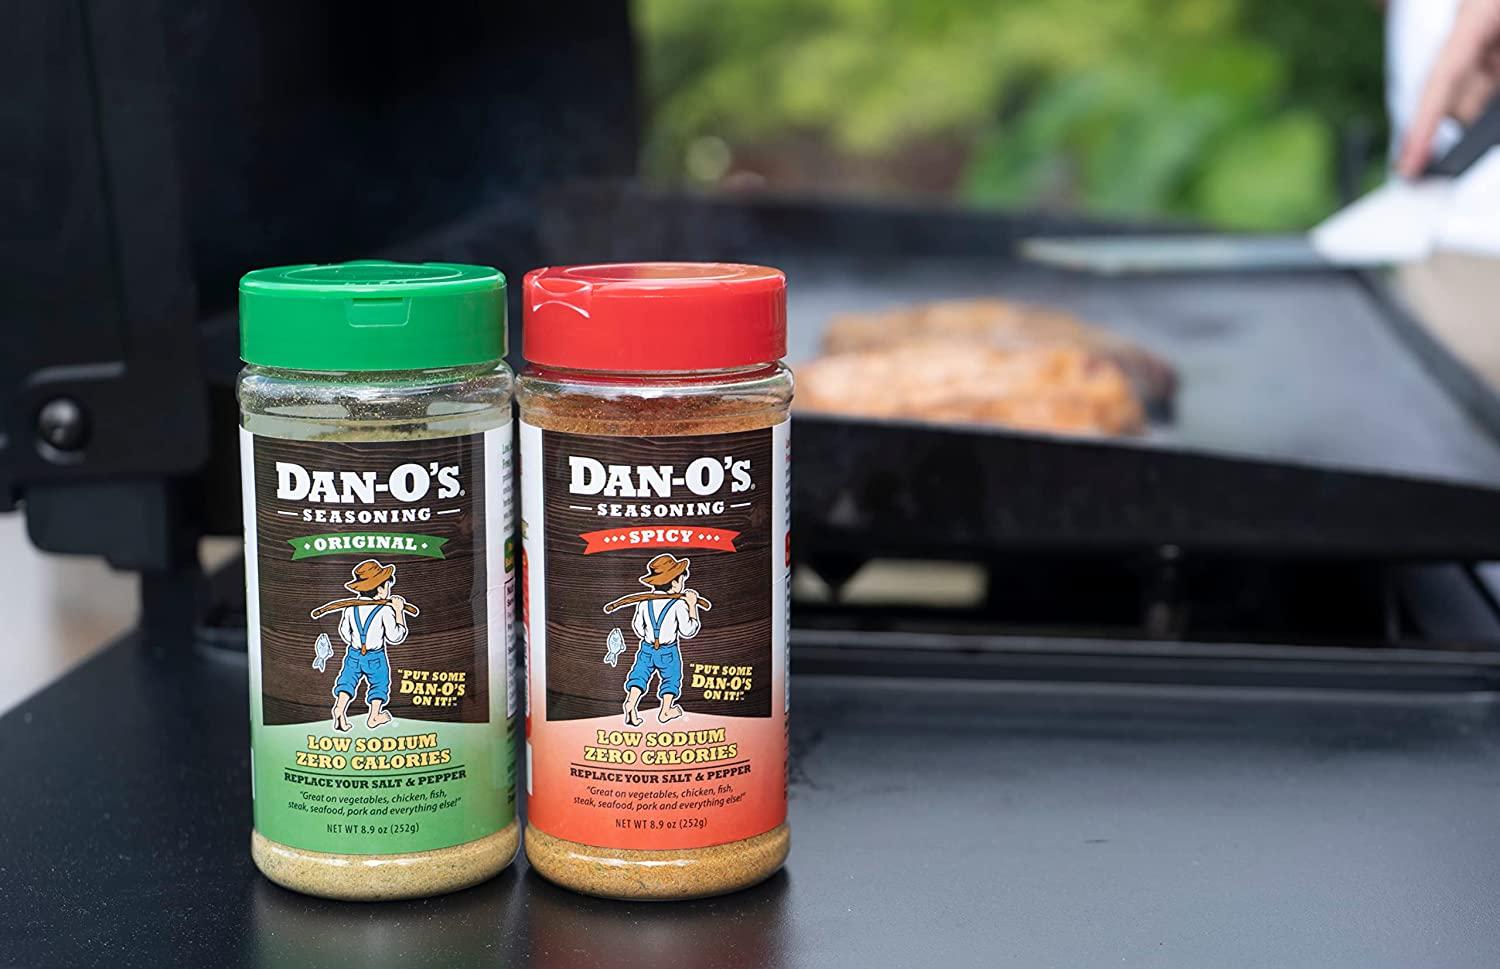 Dan-O'S Seasoning Starter Pack - All Natural, Low Sodium, No Sugar, No MSG  - Two